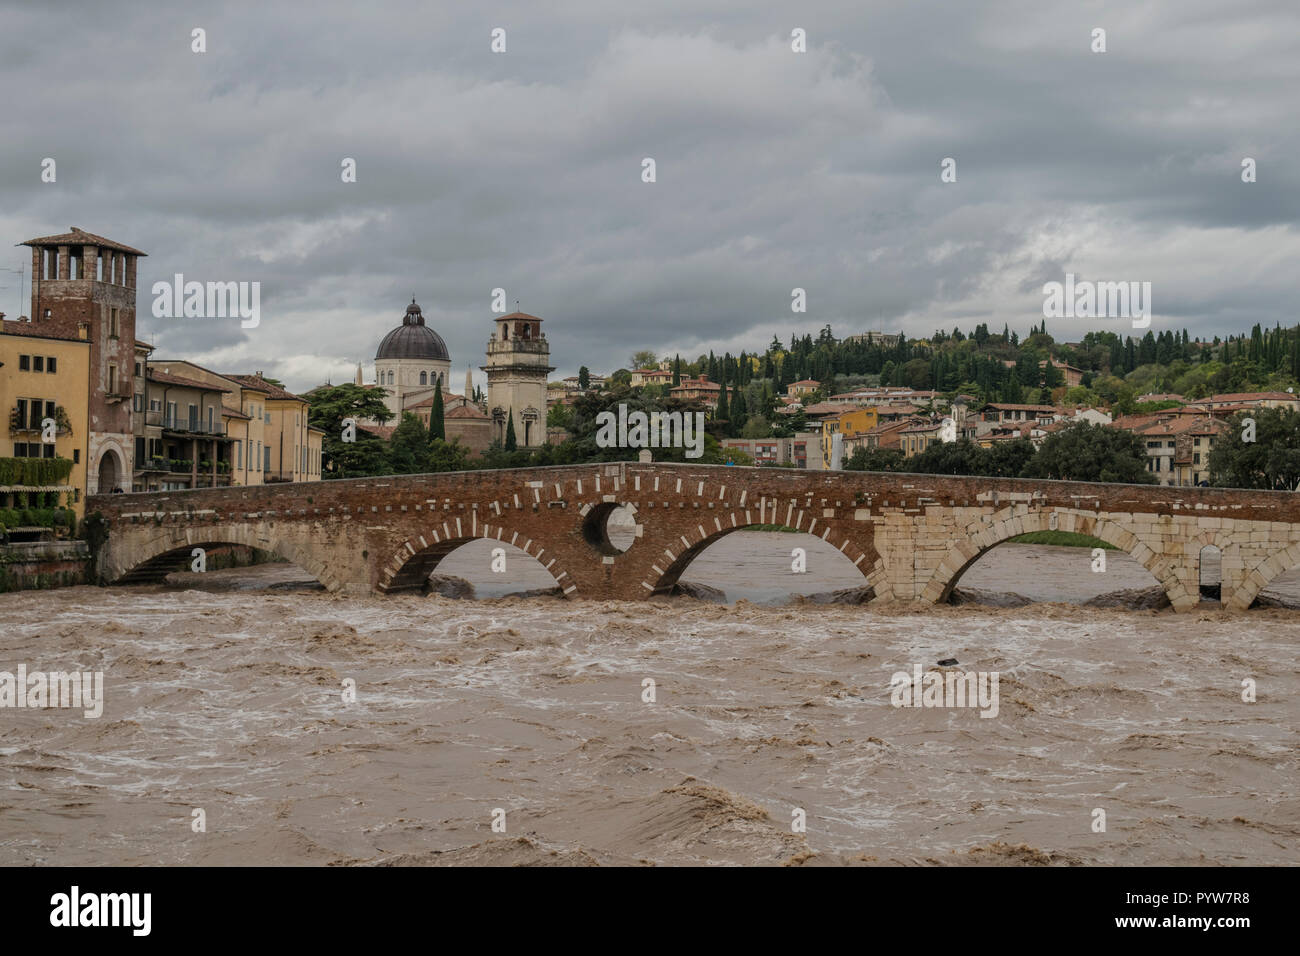 Verona, Italien - 30. Oktober 2018: Gefahr von Hochwasser nach, dass der Regen die Etsch Credit: Anca Emanuela Teaca/Alamy Leben Nachrichten gefüllt hat Stockfoto